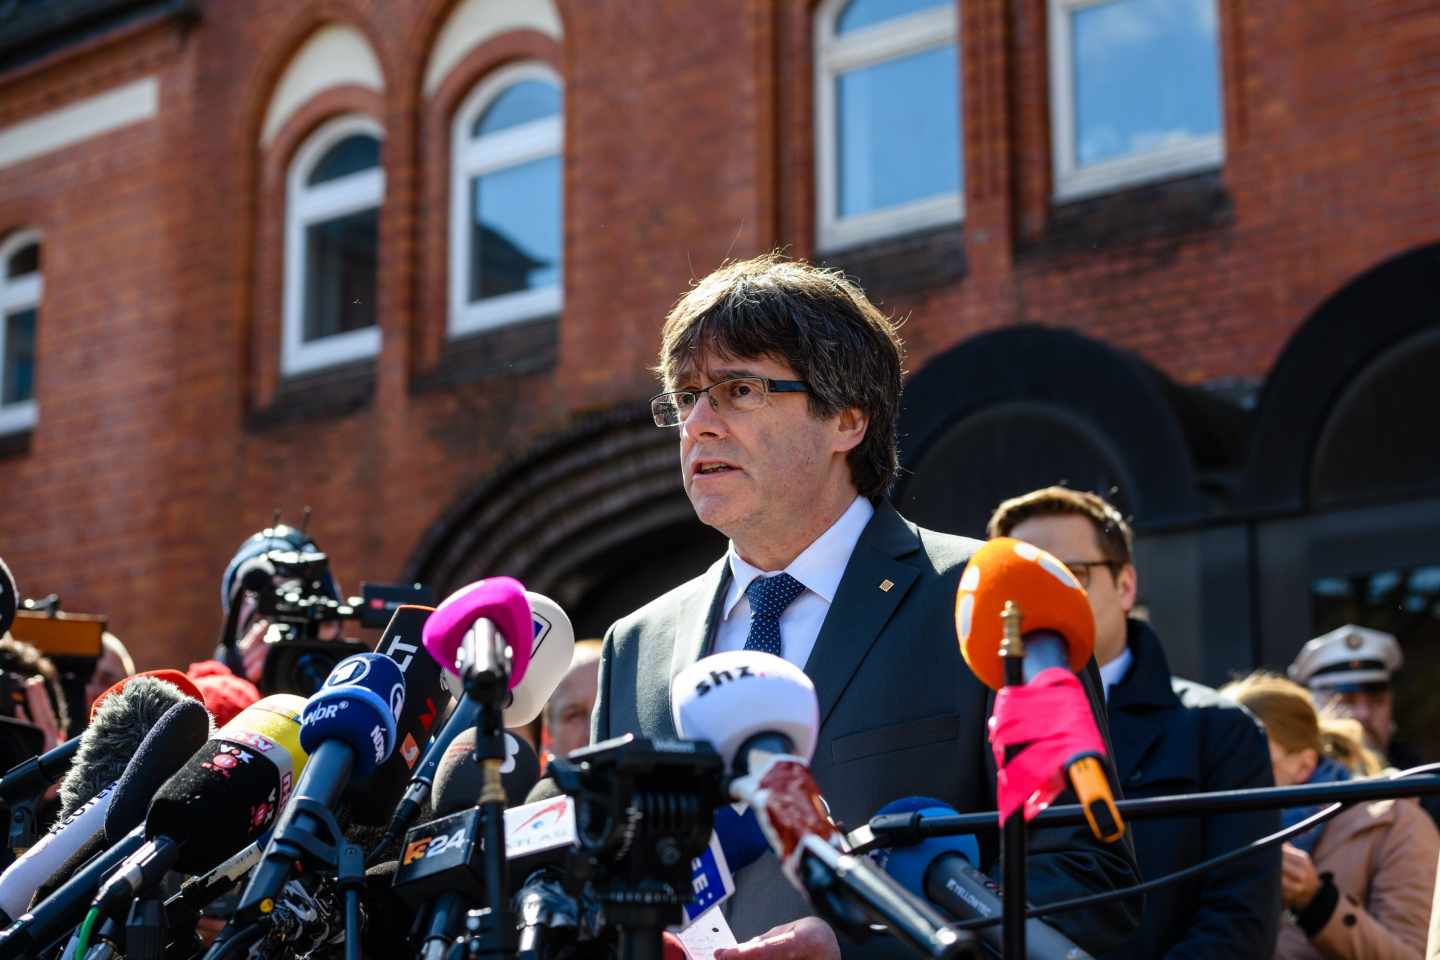 Carles Puigdemont atiende a los medios tras salir de la cárcel en Alemania.